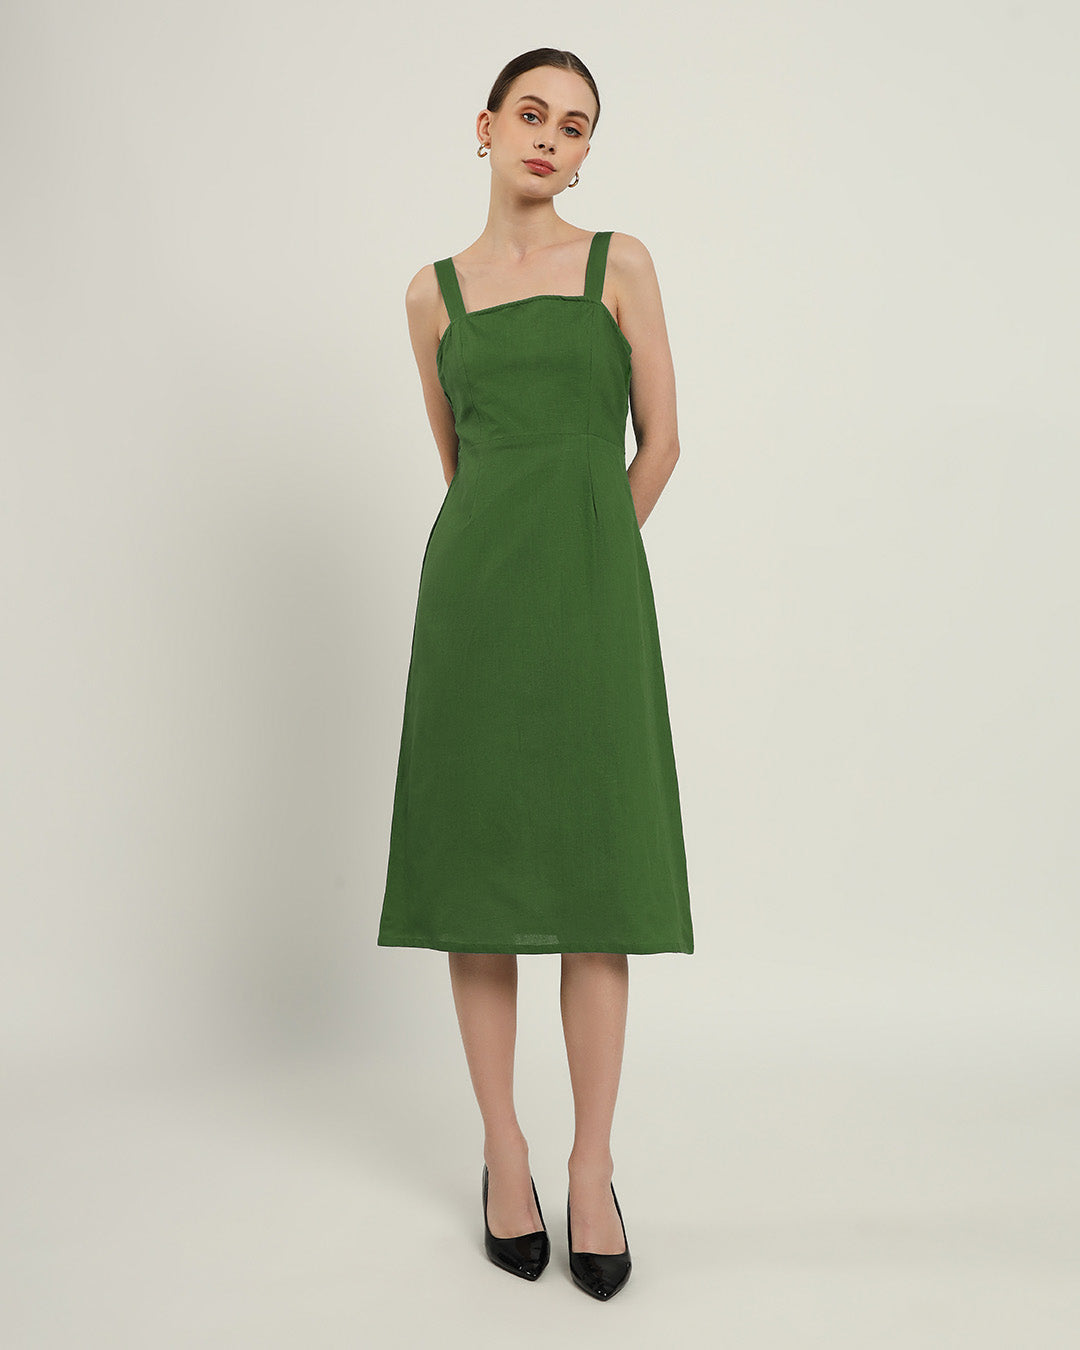 The Samara Emerald Cotton Dress